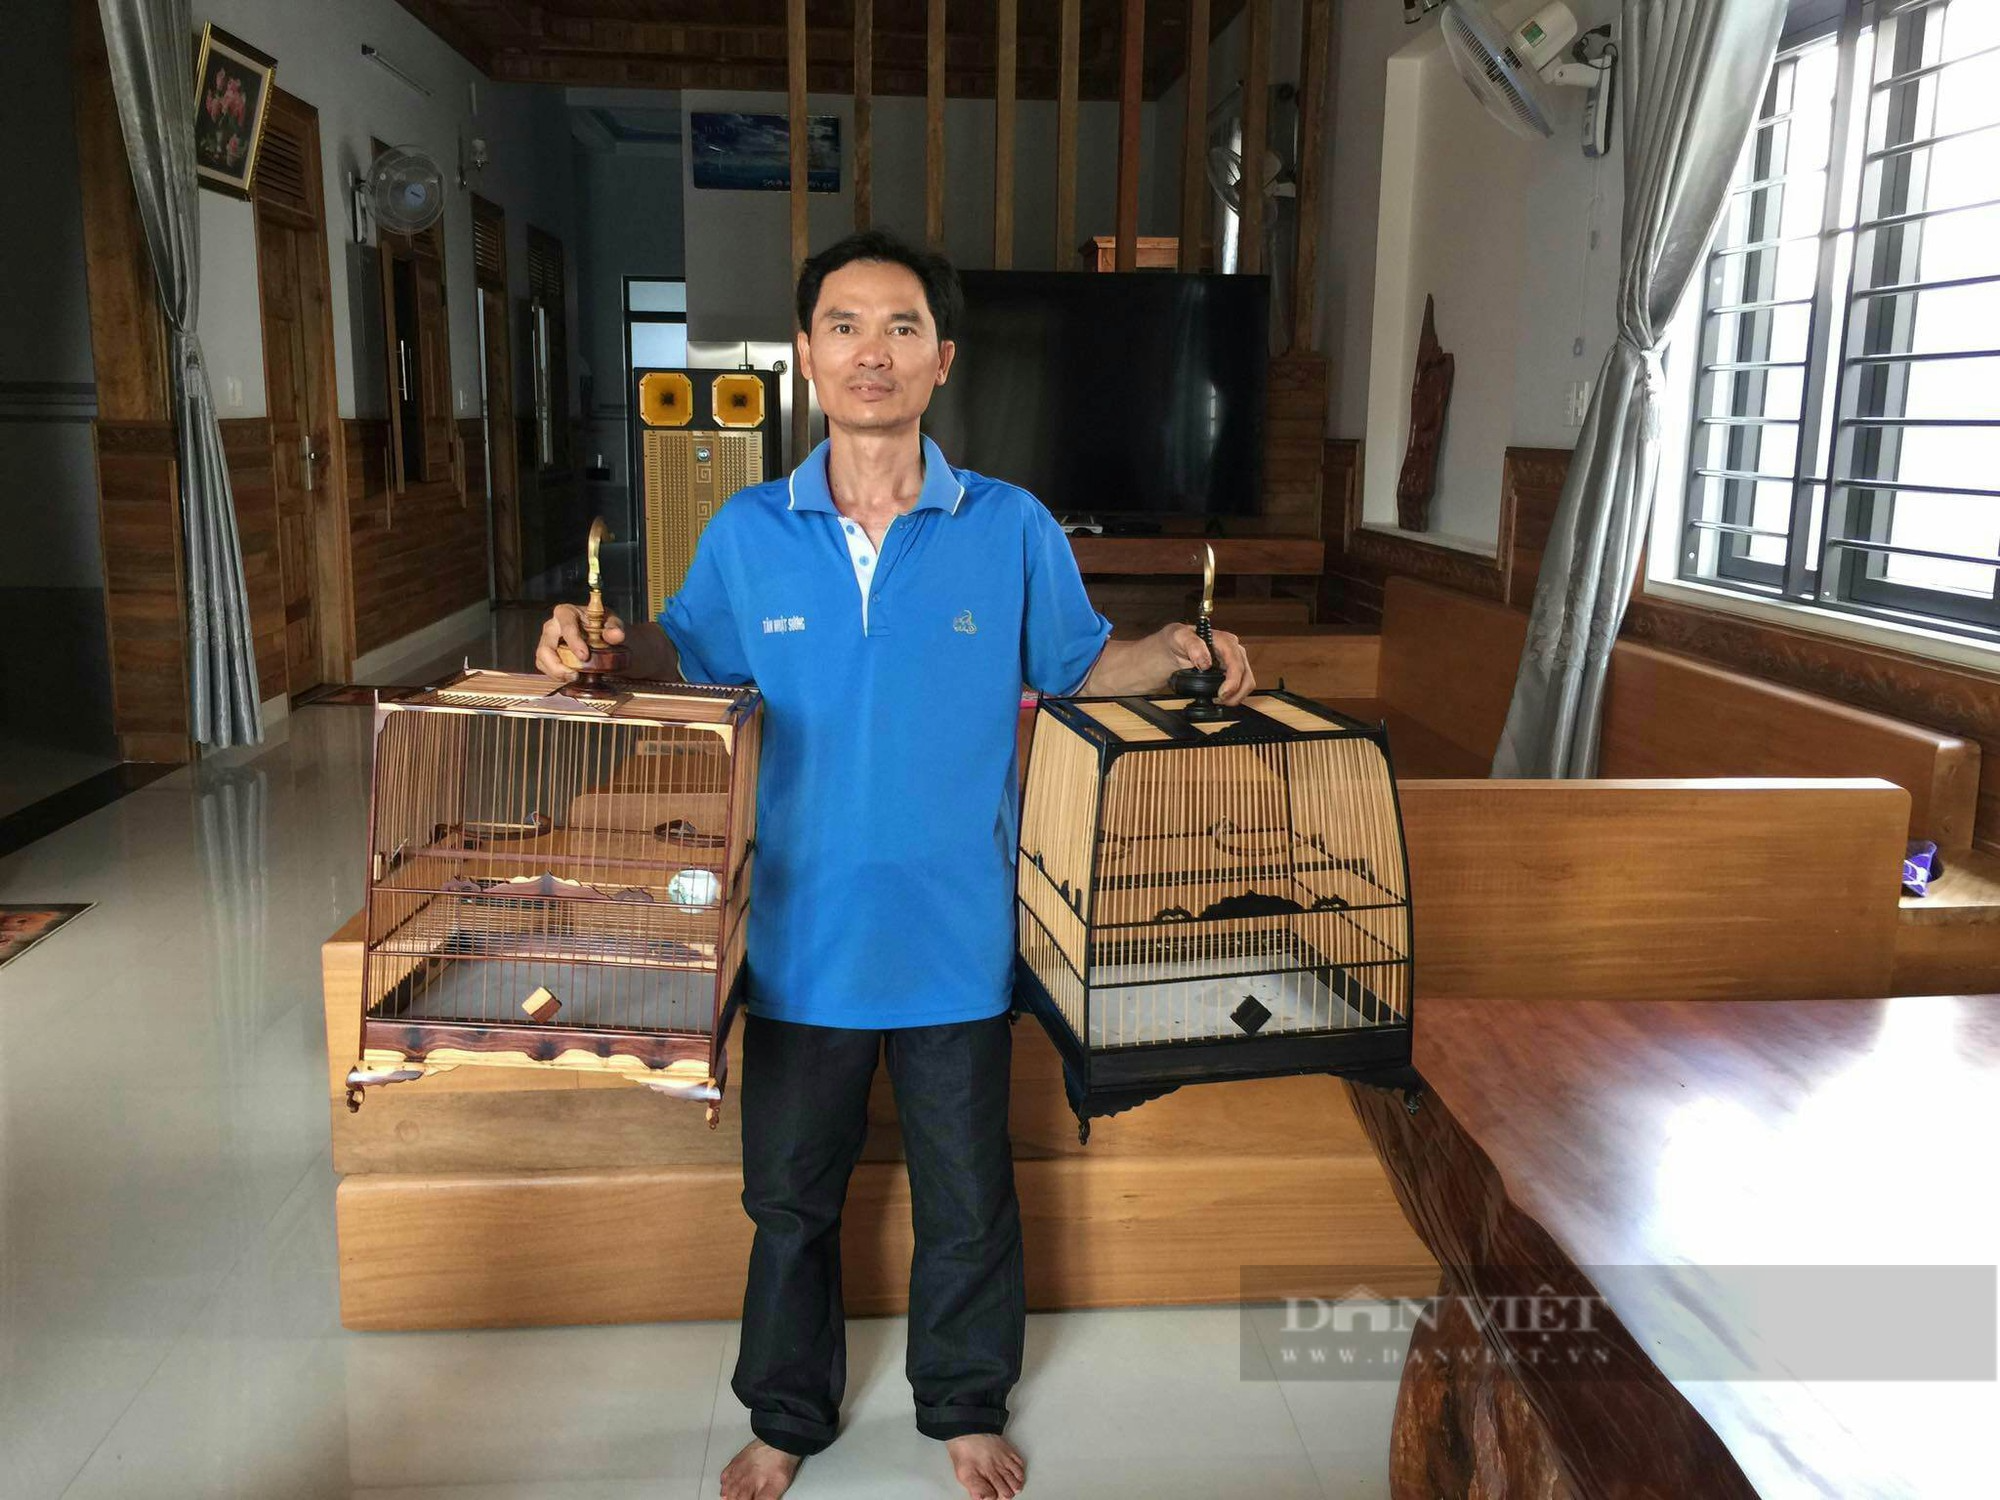 Làm nghề chế tác lồng chim cảnh nghệ thuật, anh thợ mộc ở Bình Định lãi ròng 400 triệu/năm - Ảnh 3.